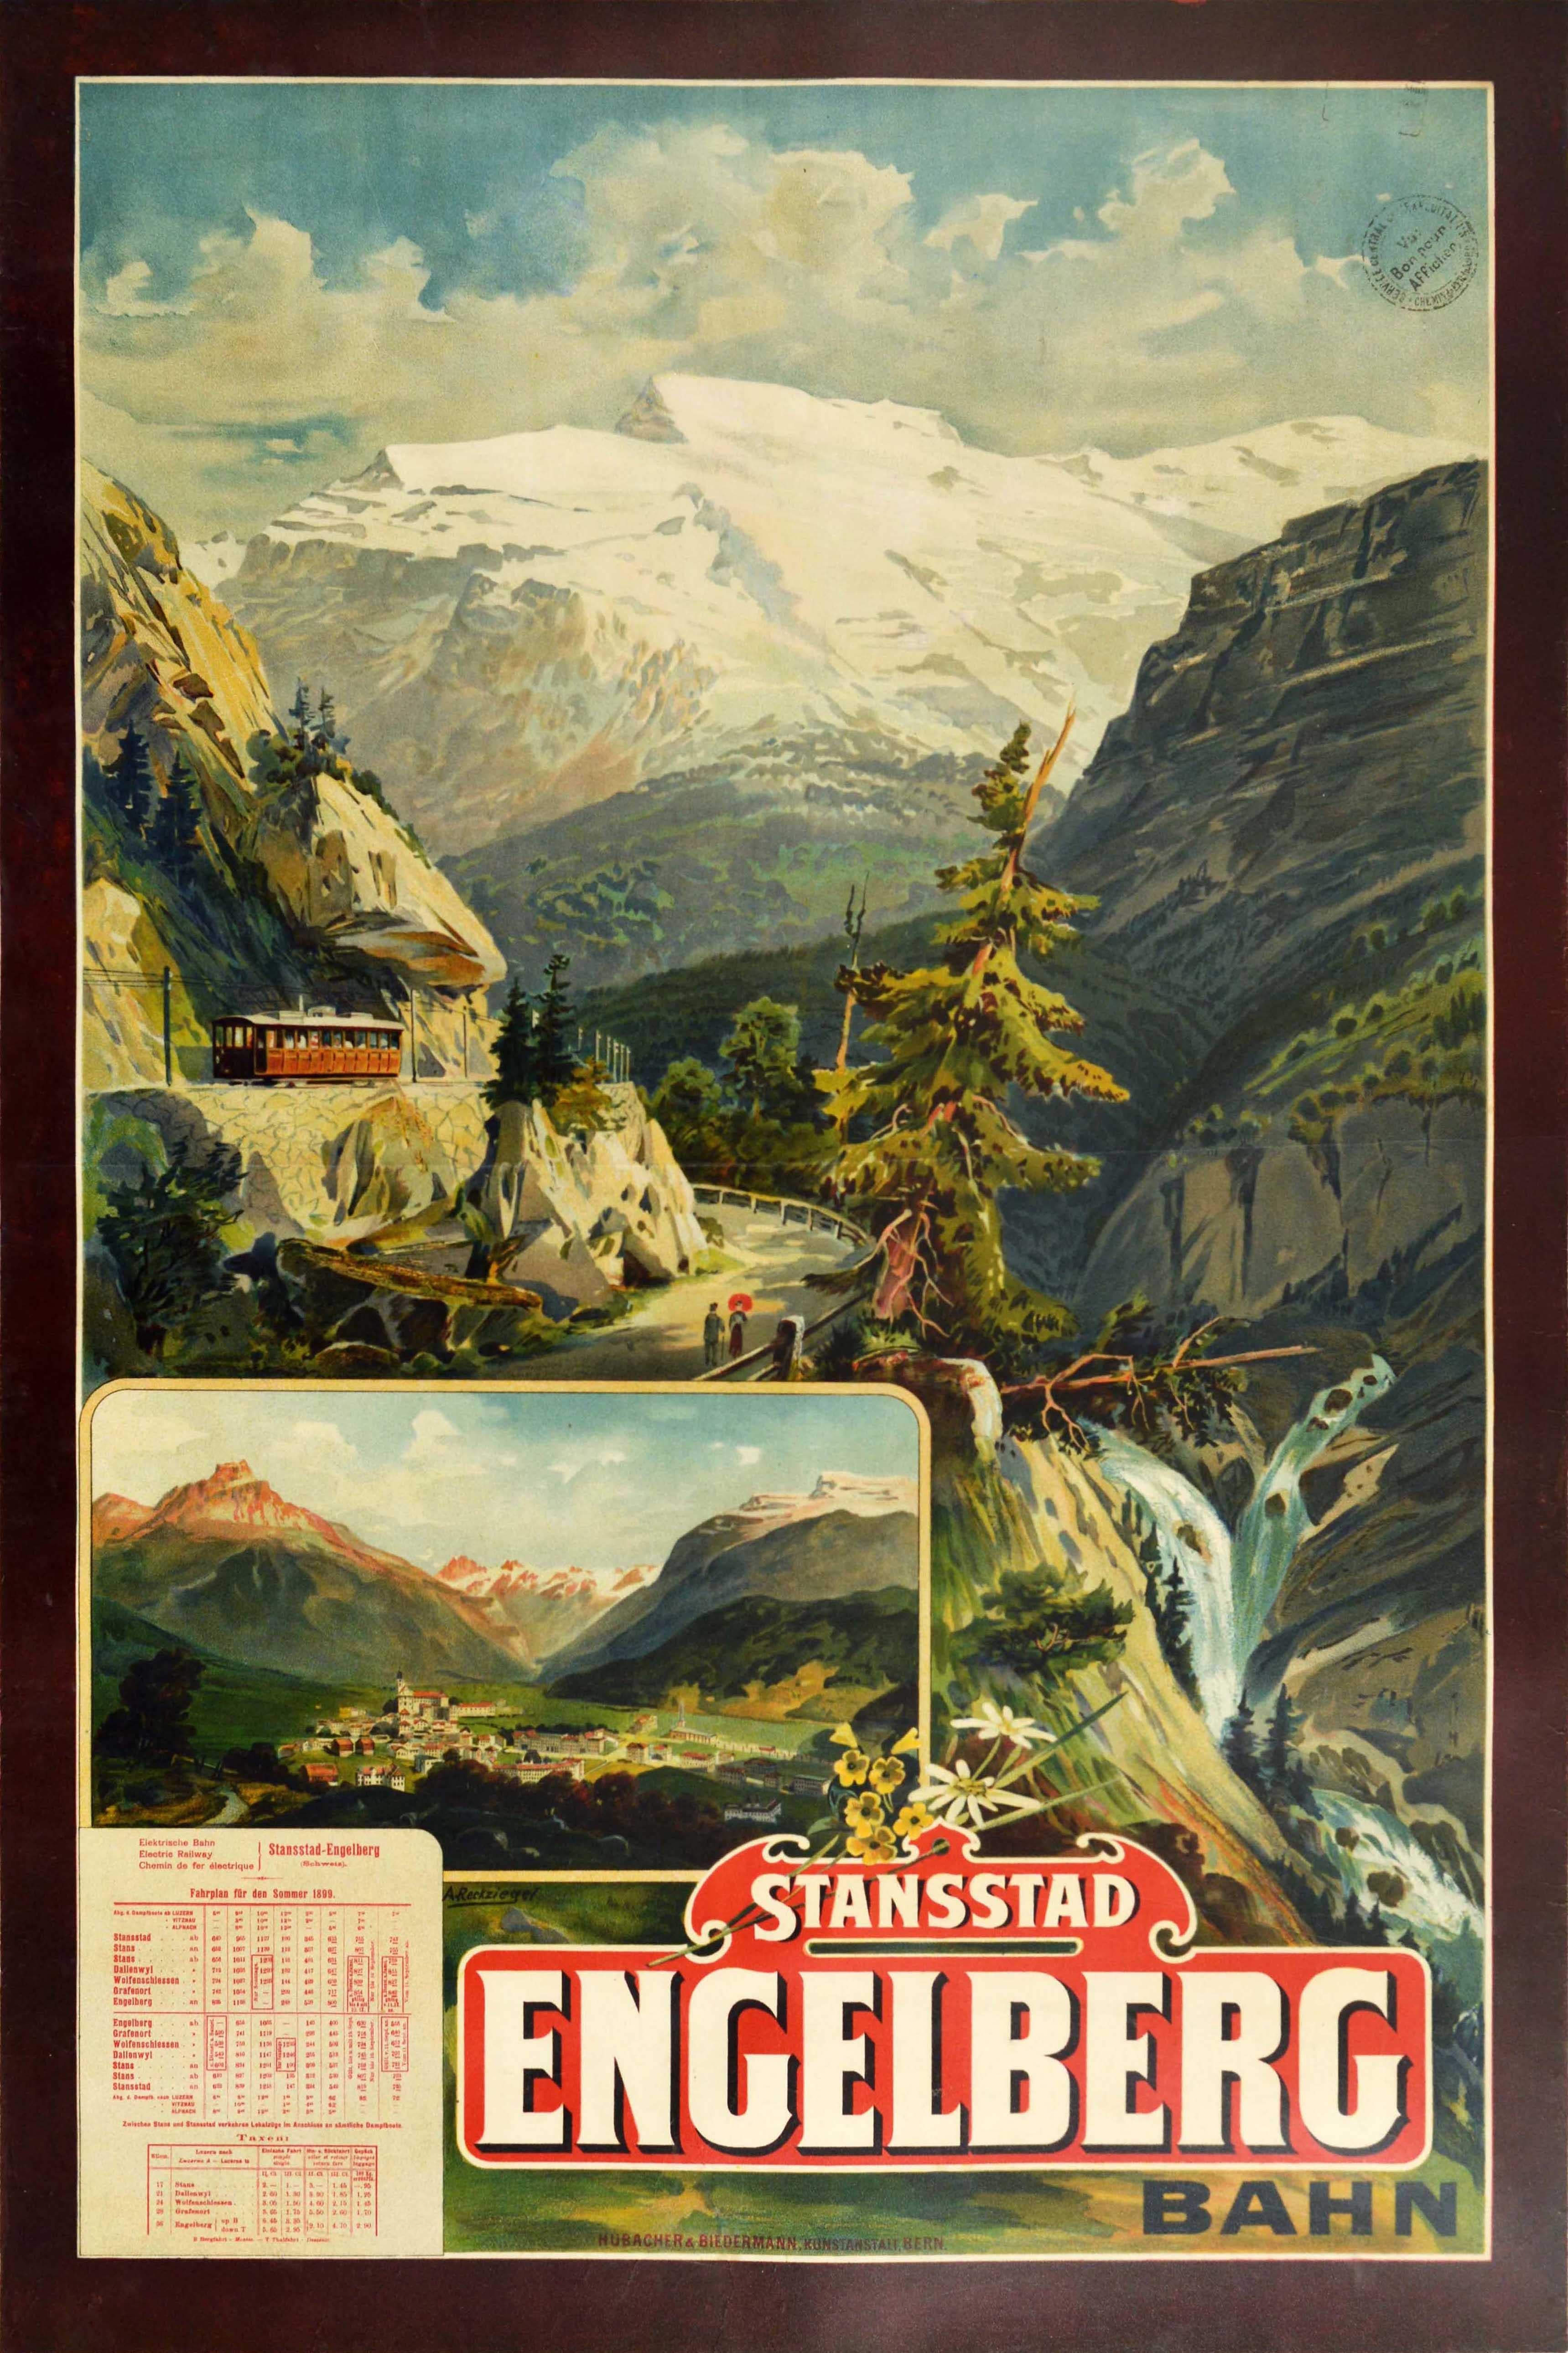 Anton Reckziegel Print - Original Antique Poster Stansstad Engelberg Railway Switzerland Swiss Alps View